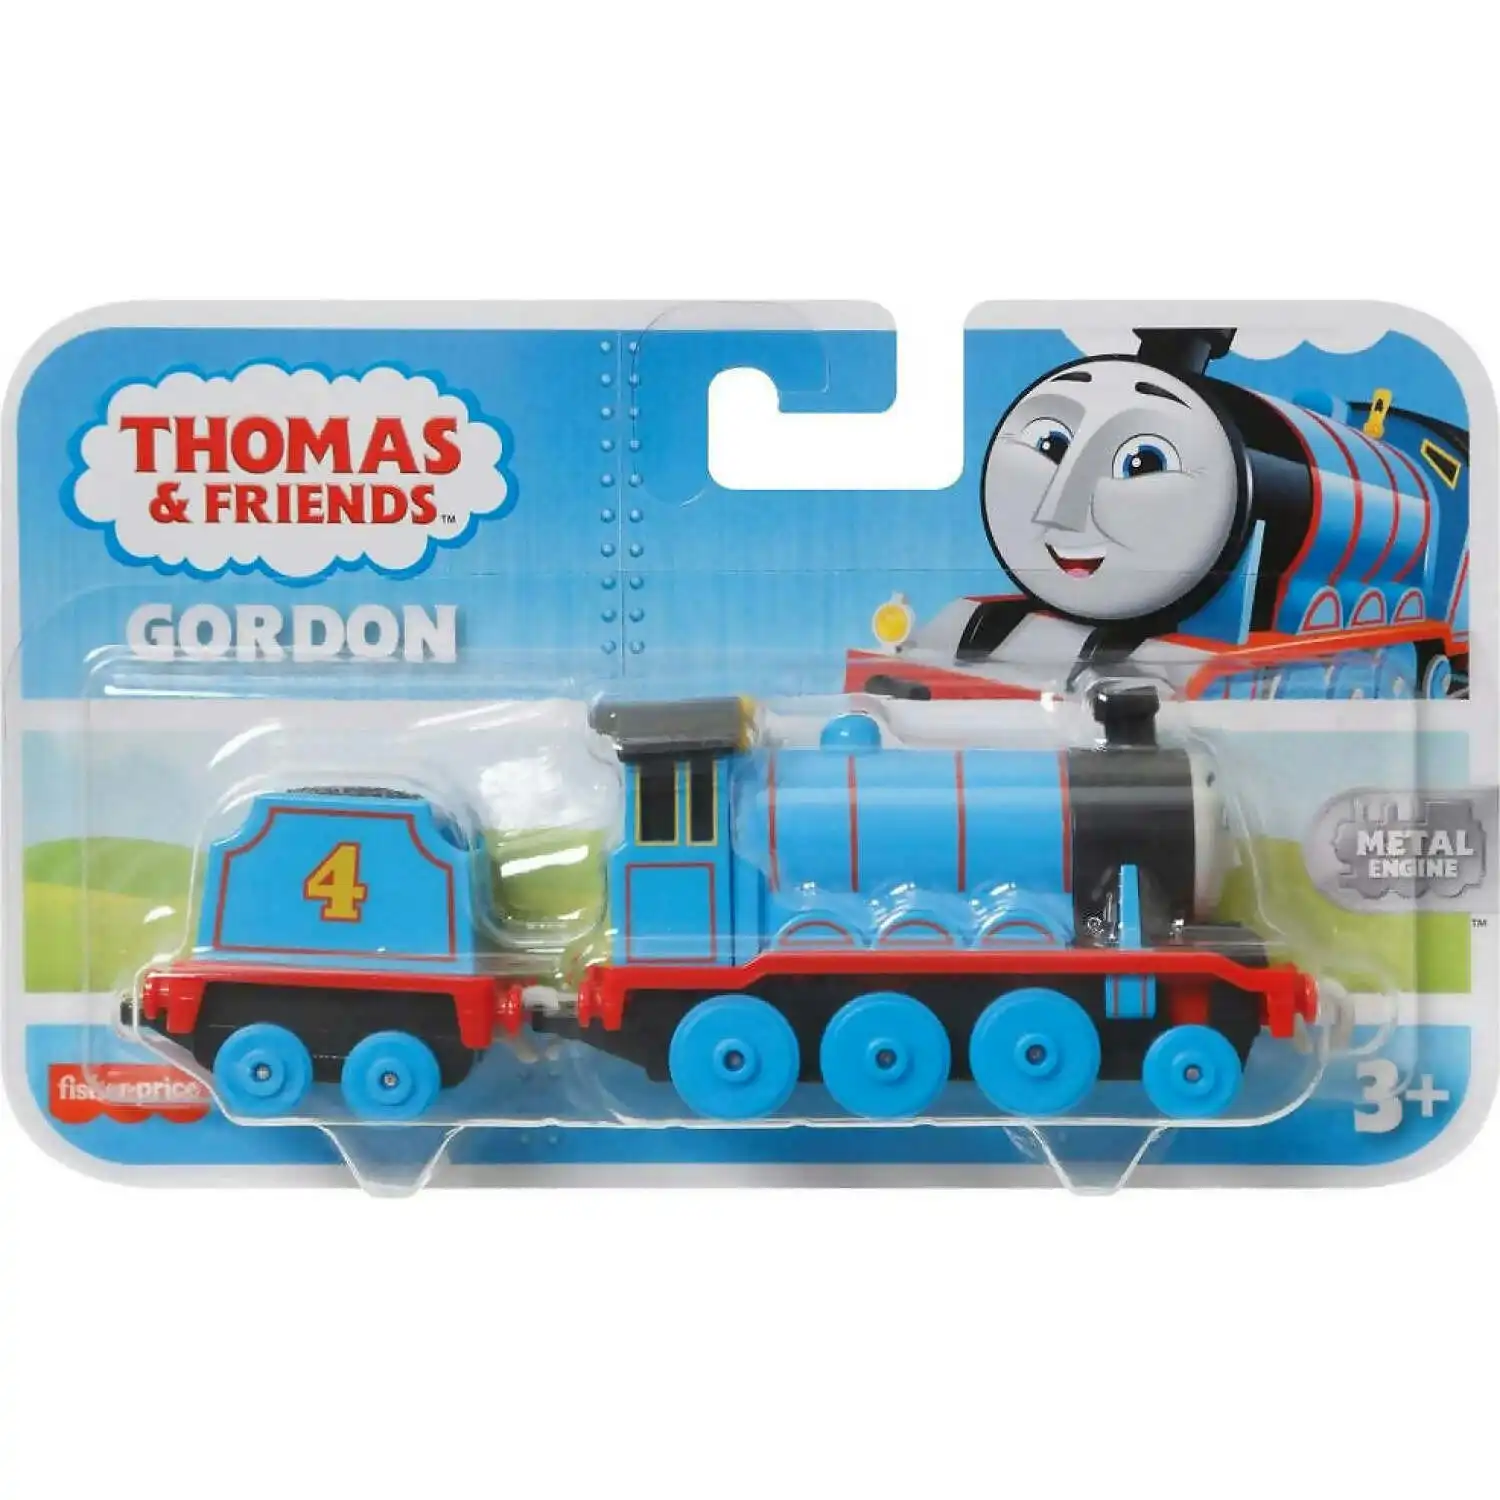 Fisher-price - Thomas & Friends Large Die-cast Engine Gordon - Mattel